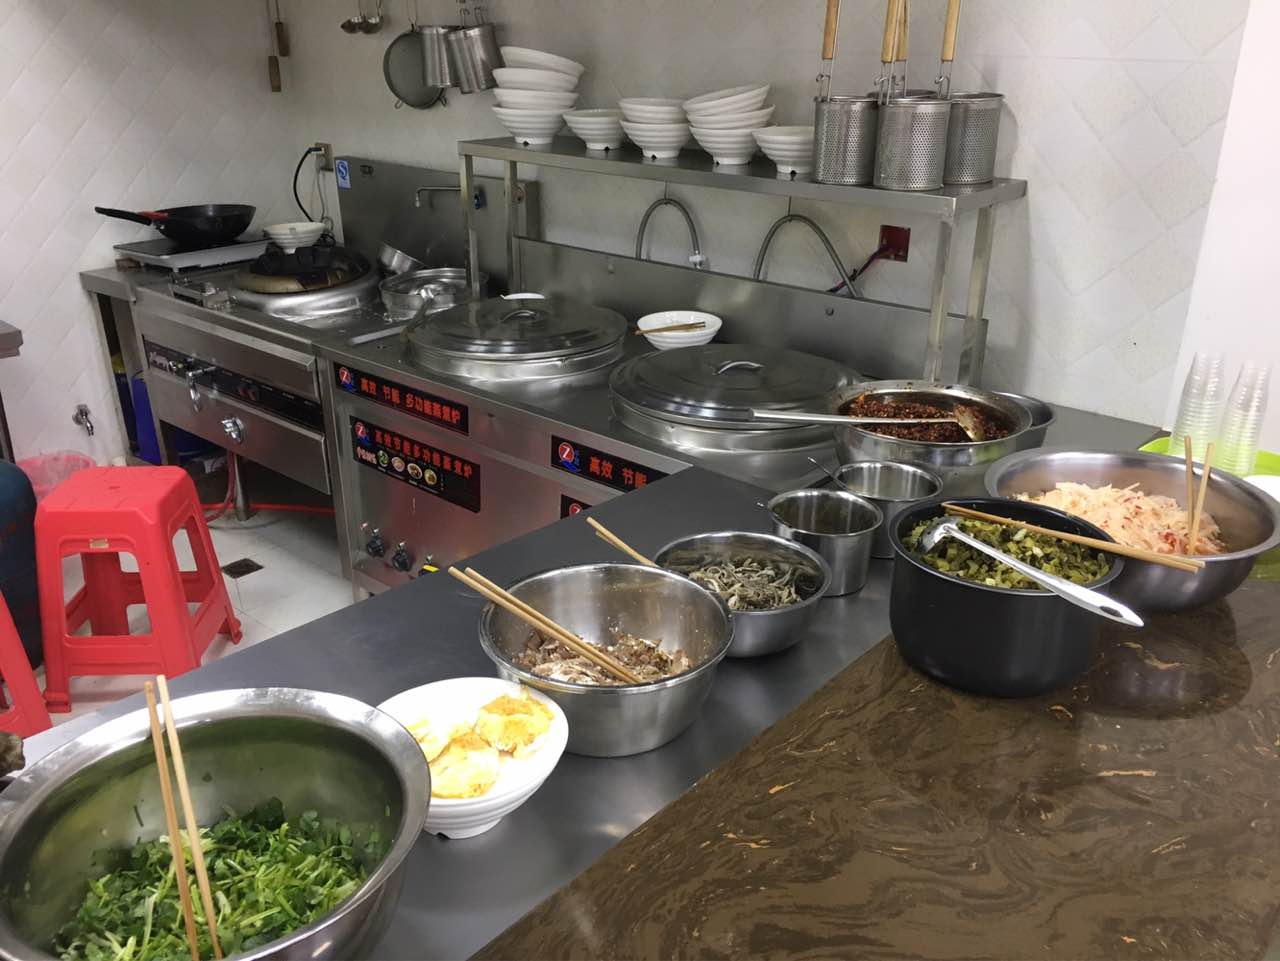 2022滋滋源水城羊肉粉(方舟g1店)美食餐厅,看看厨房都那么干净,做出来